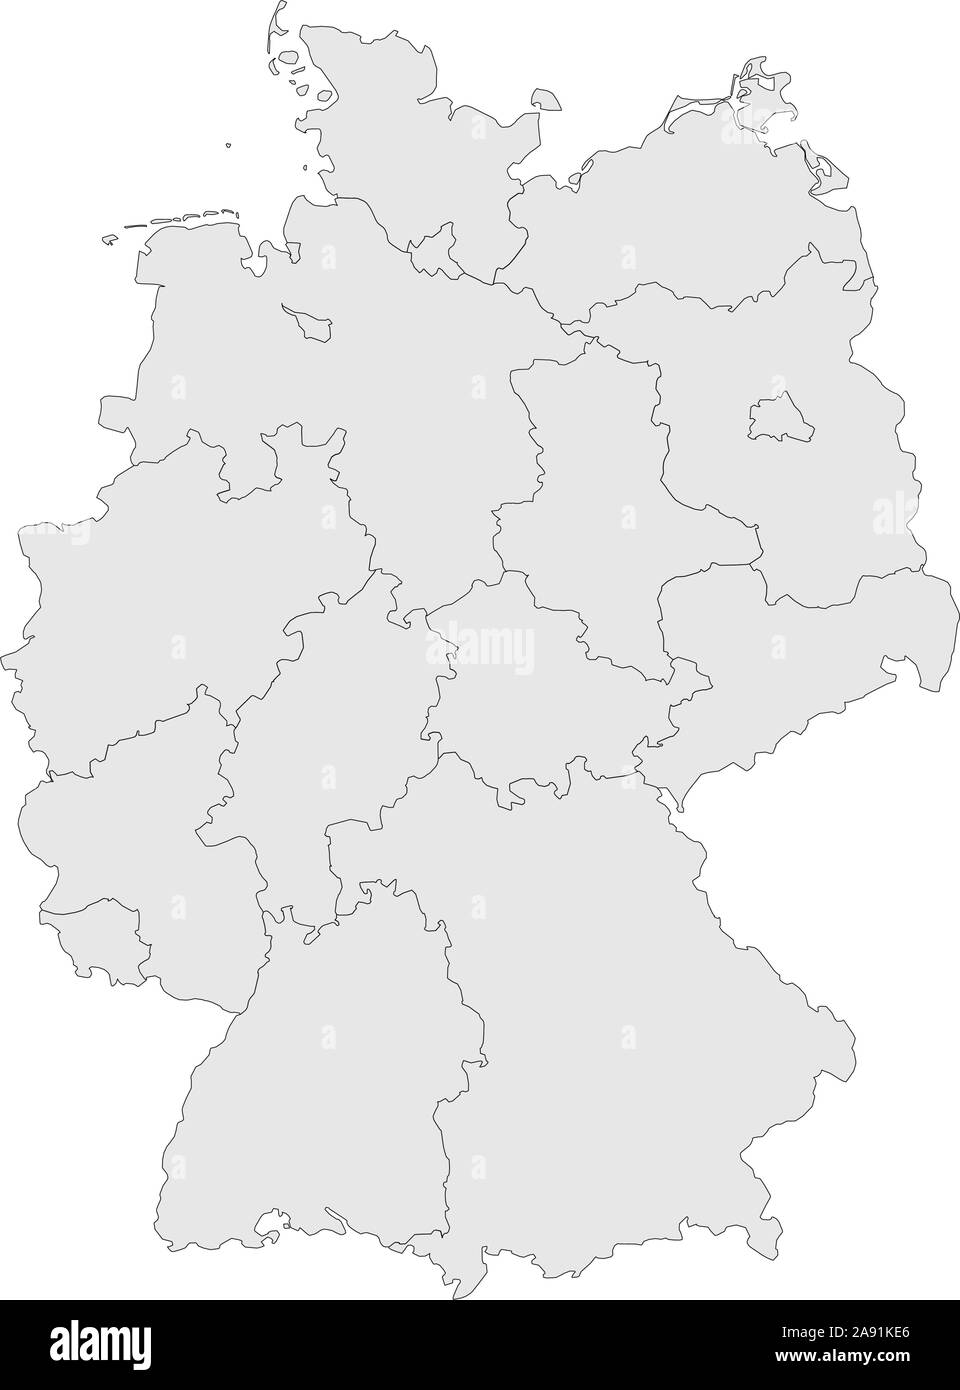 Germania province mappa con i confini illustrazione vettoriale. Colore grigio chiaro. Illustrazione Vettoriale